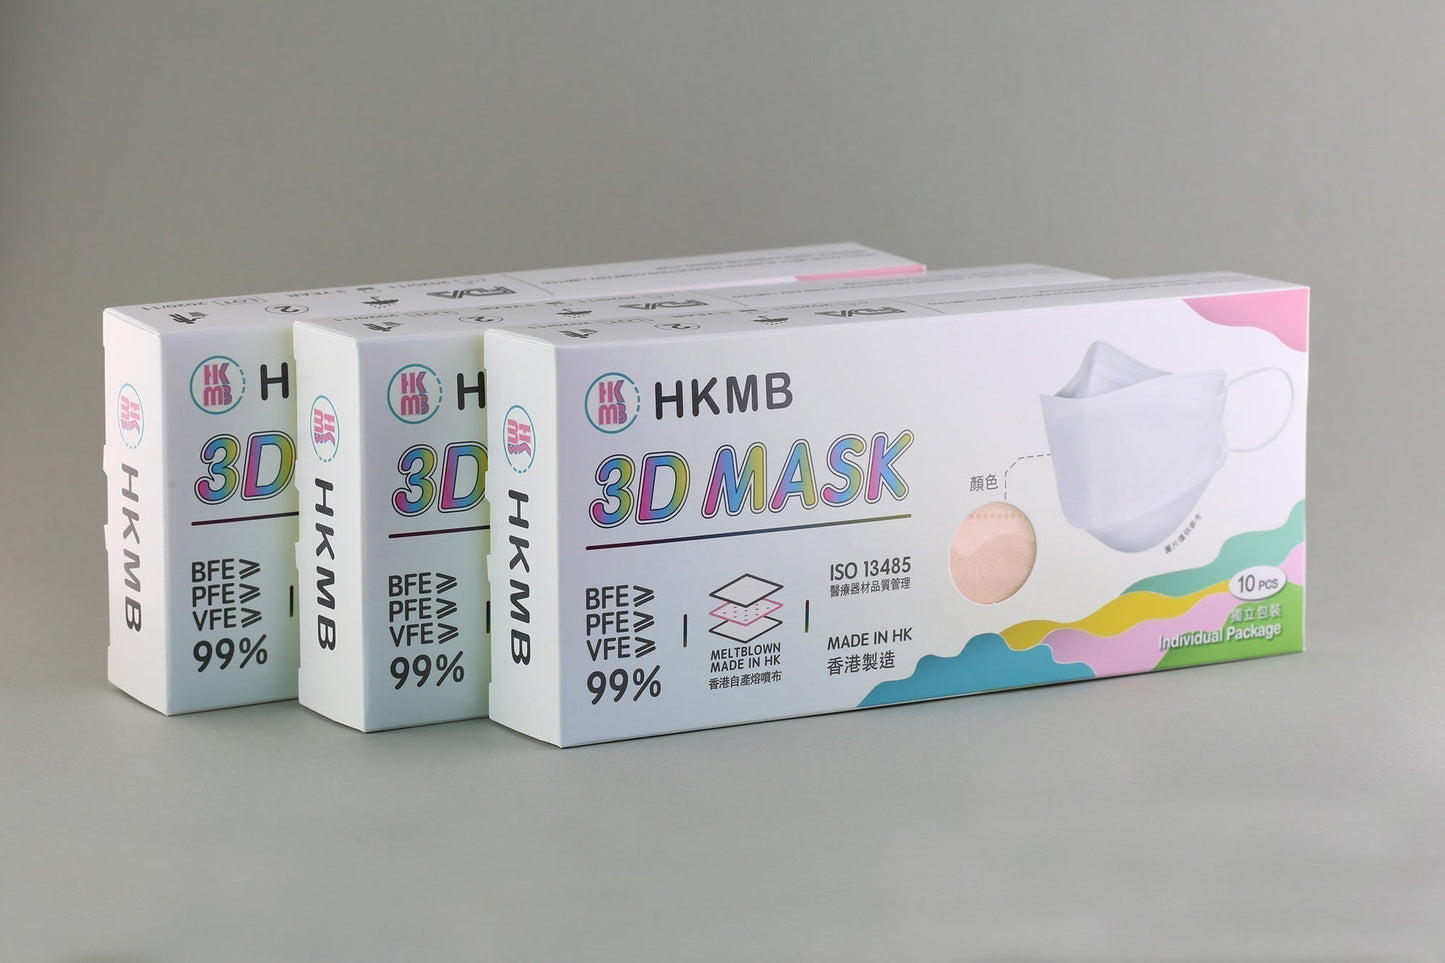 【現貨】Spring Flower 3D Mask HKMB VFE99 10pcs/box【Made in Hong Kong】